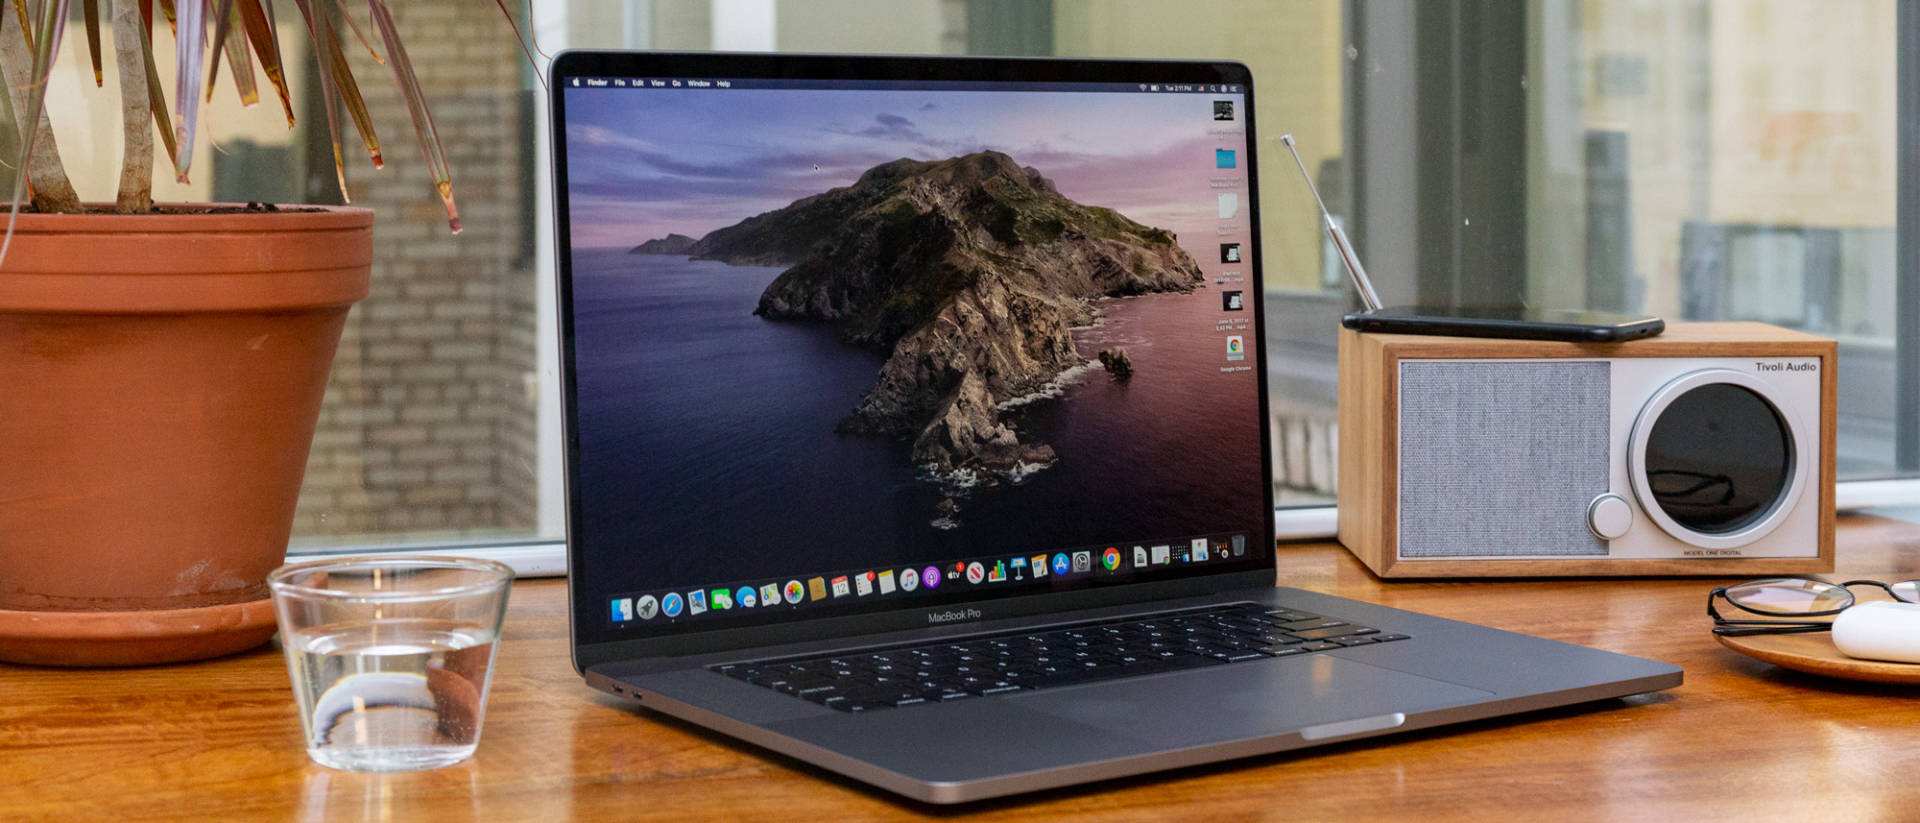 都说苹果产品好用，但是懂电脑的人从来不推荐MacBook，为什么？